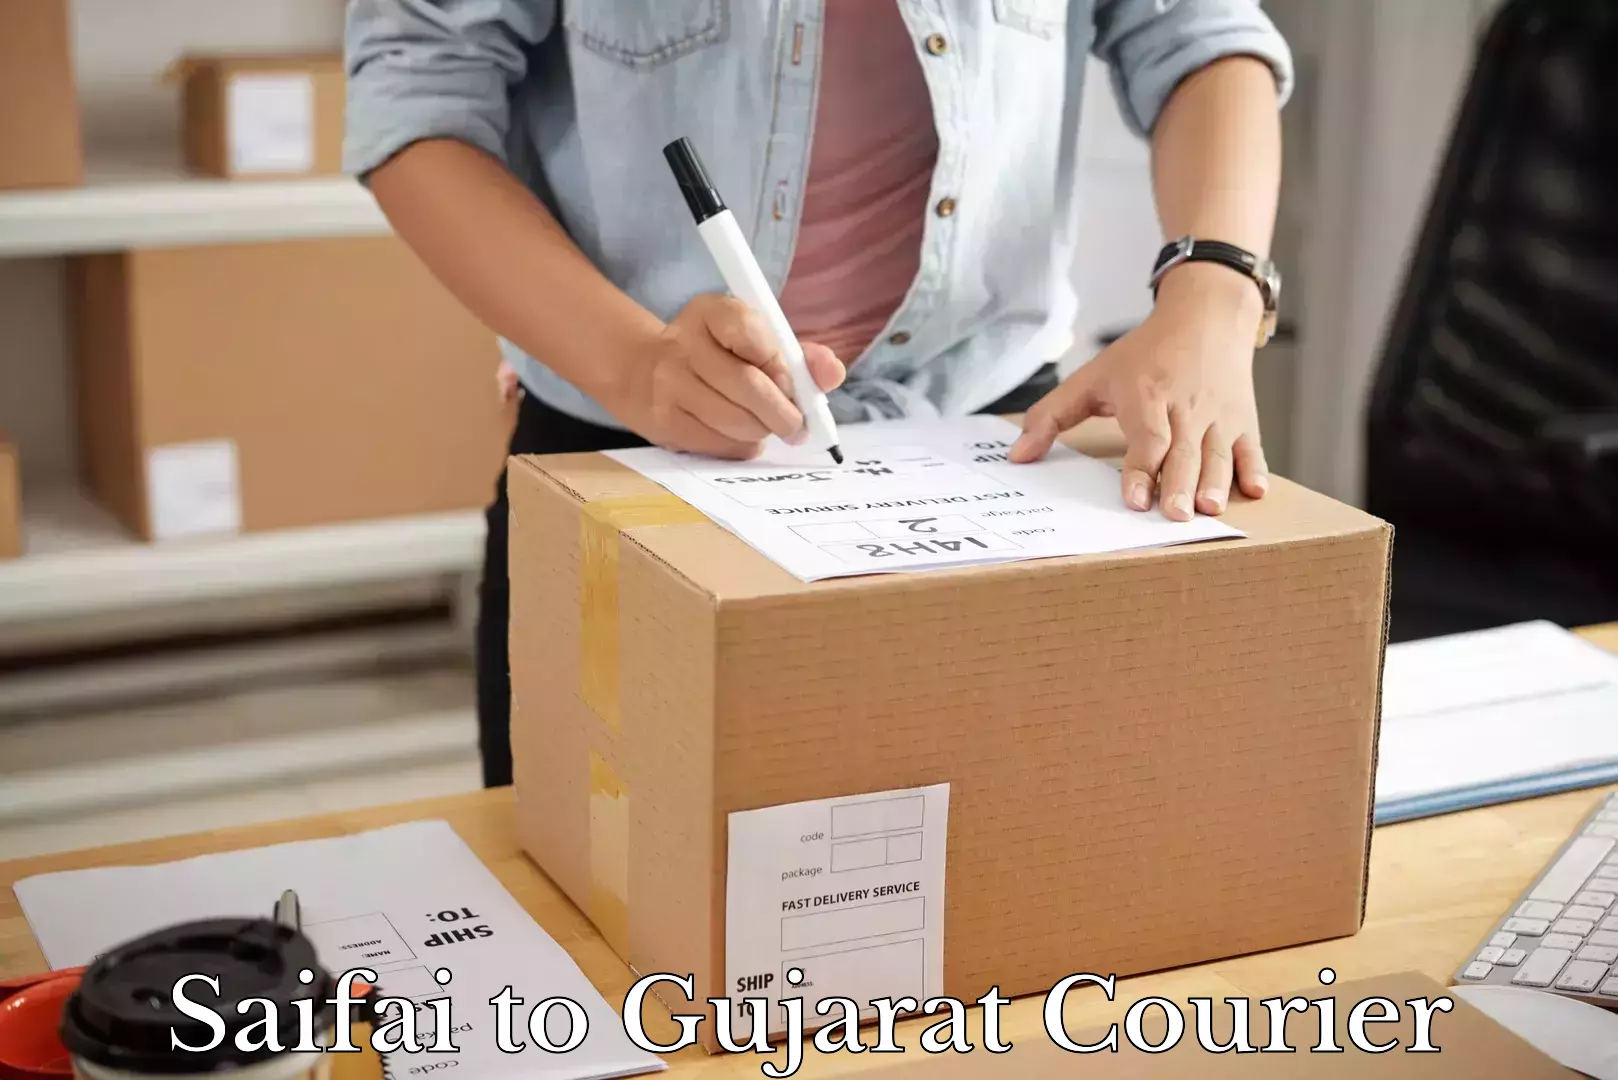 Furniture delivery service Saifai to Gujarat